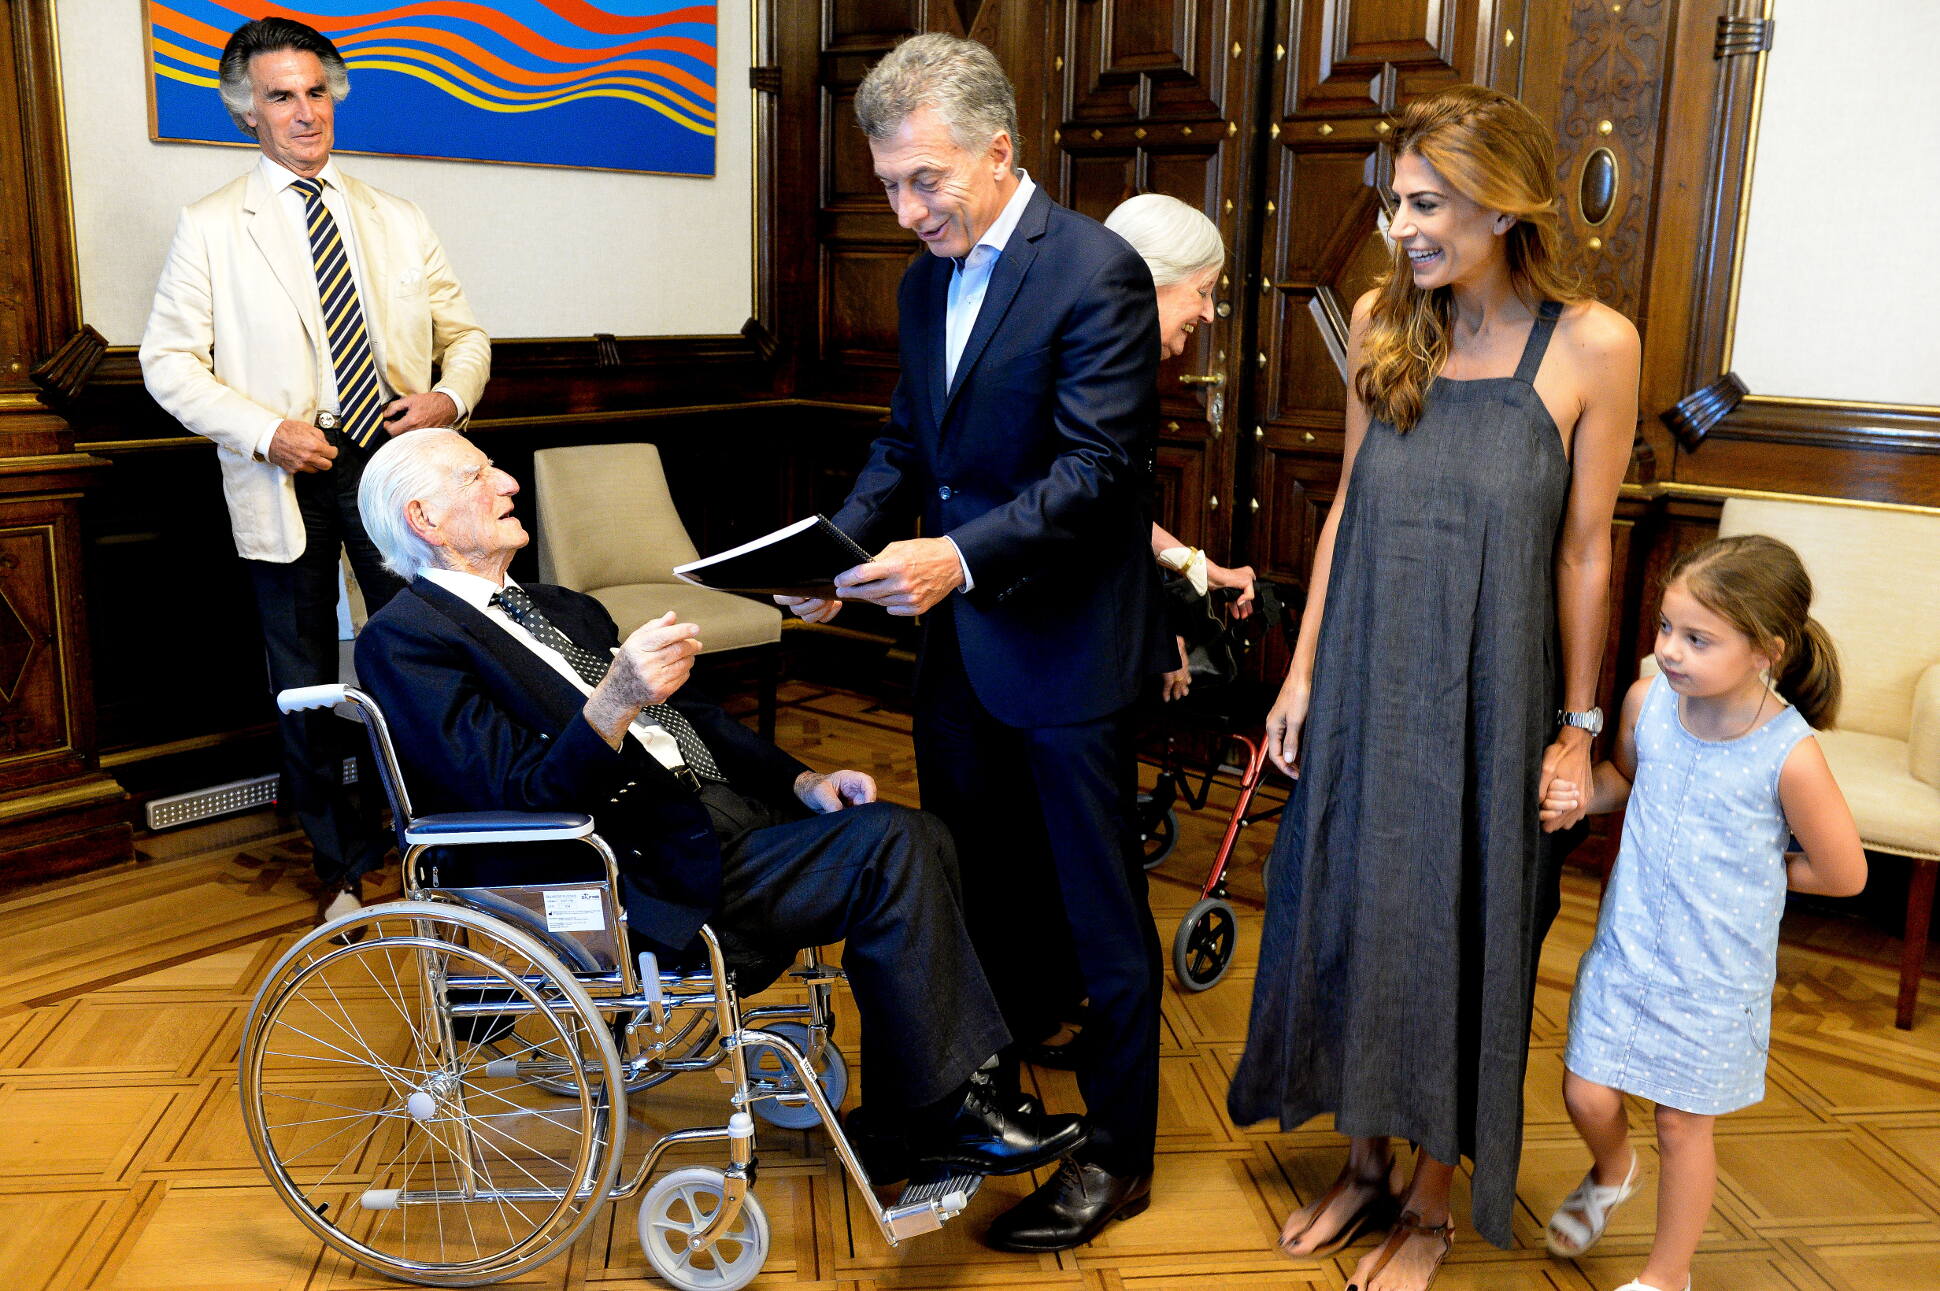 El Presidente celebró su cumpleaños en Casa Rosada con un jubilado de 100 años